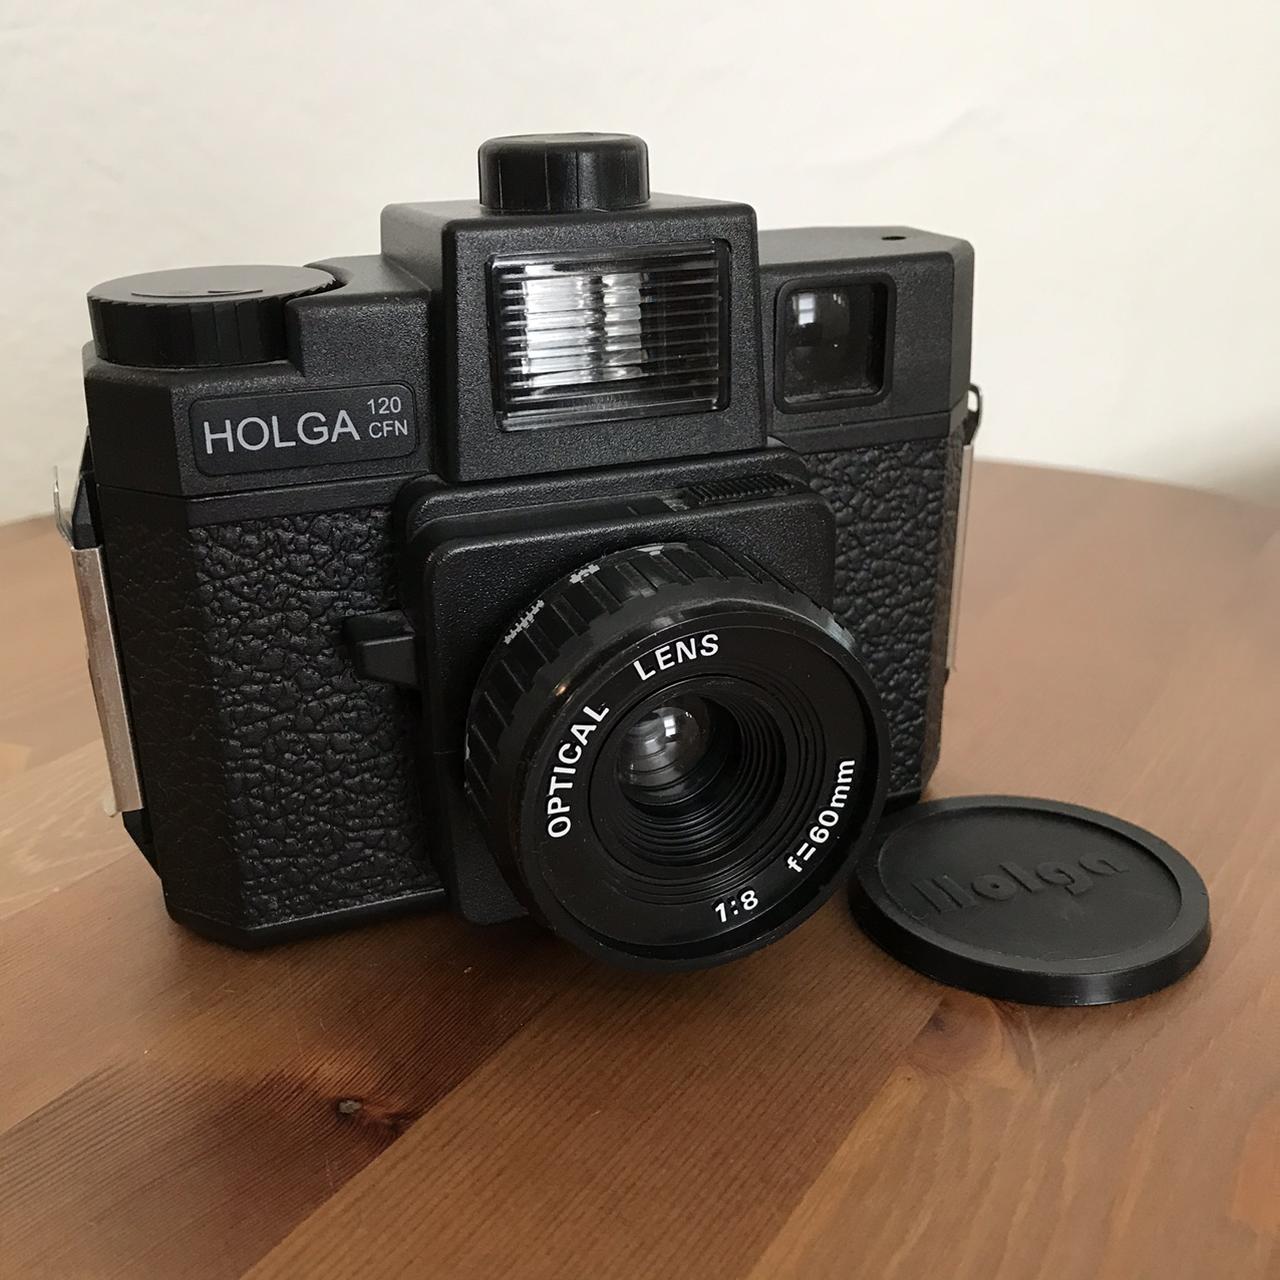 Product Image 2 - Holga 130 CFN colorflash camera